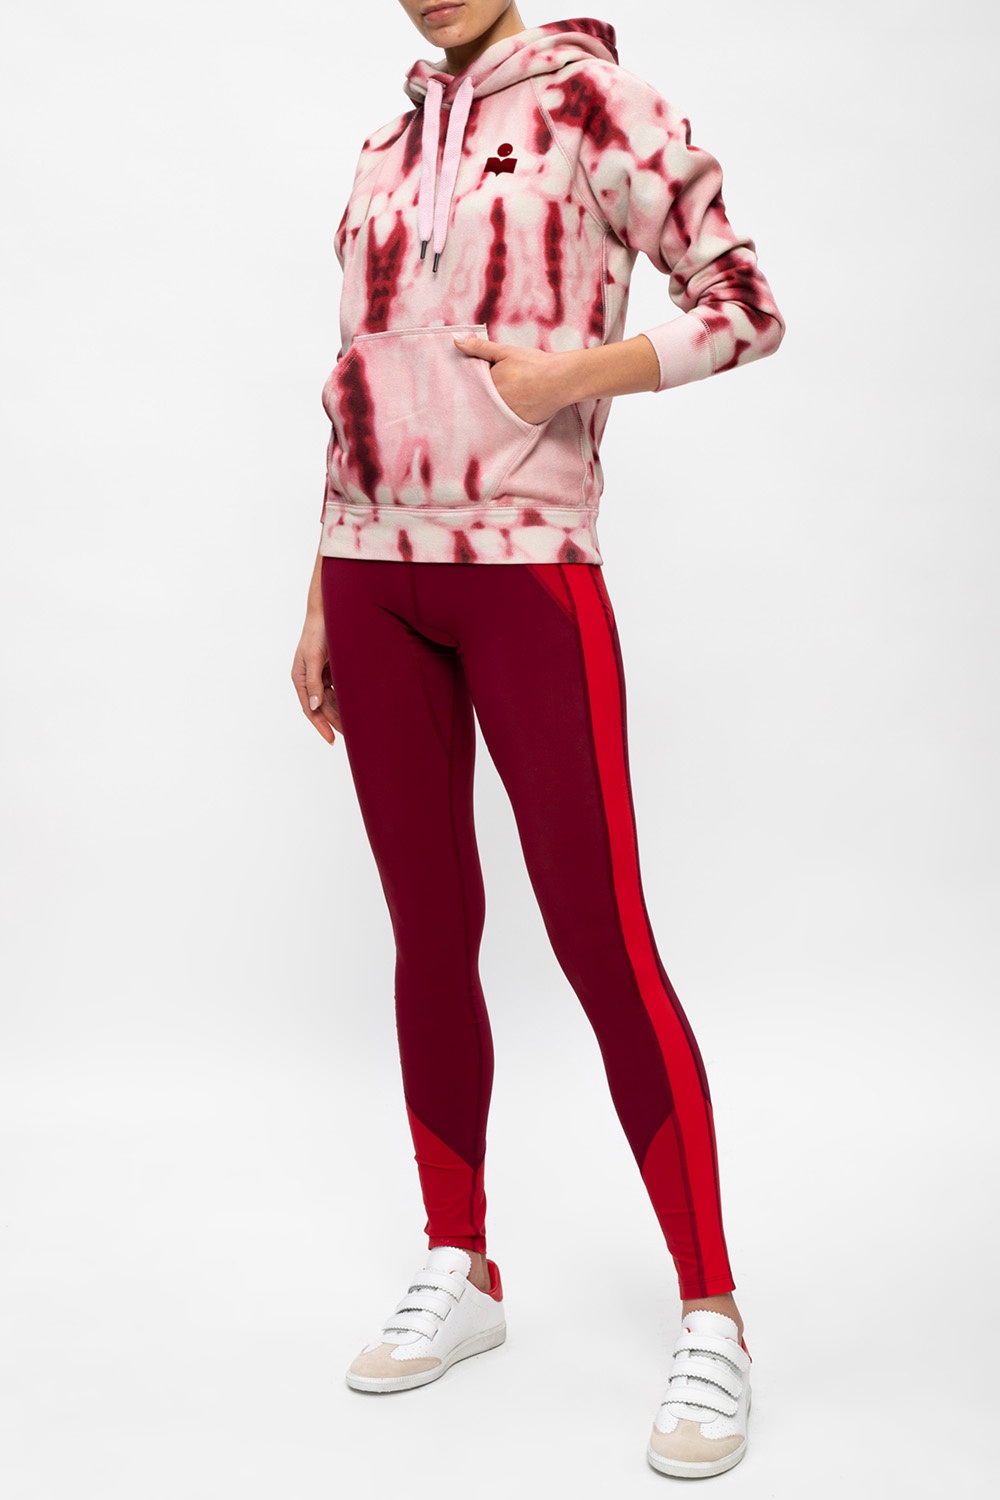 Isabel Marant Branded leggings